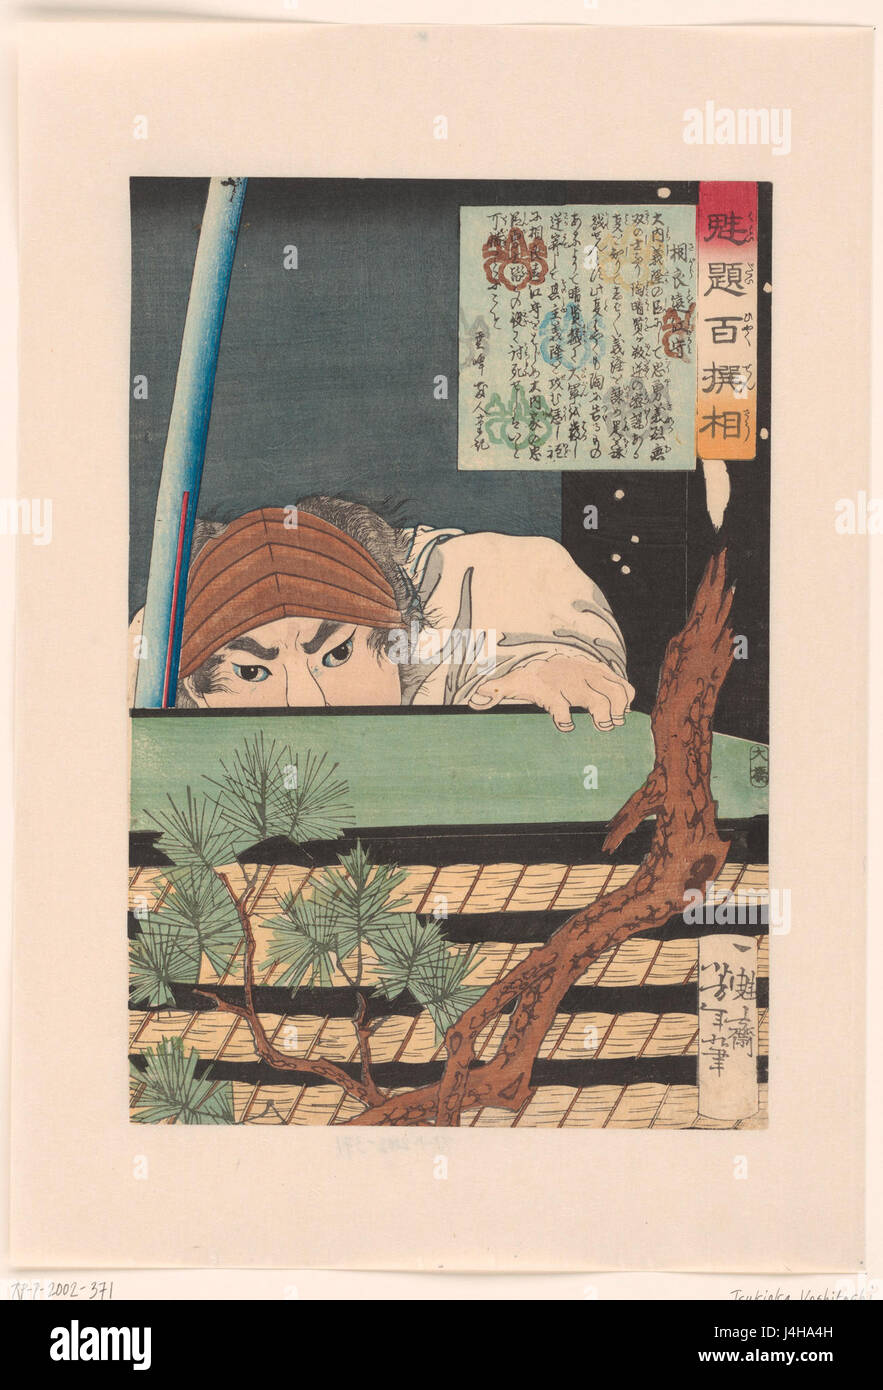 Sagara Totomi no Kami zich verschuilend achter een stapel tatami matten. Rijksmuseum RP P 2002 371 Stock Photo